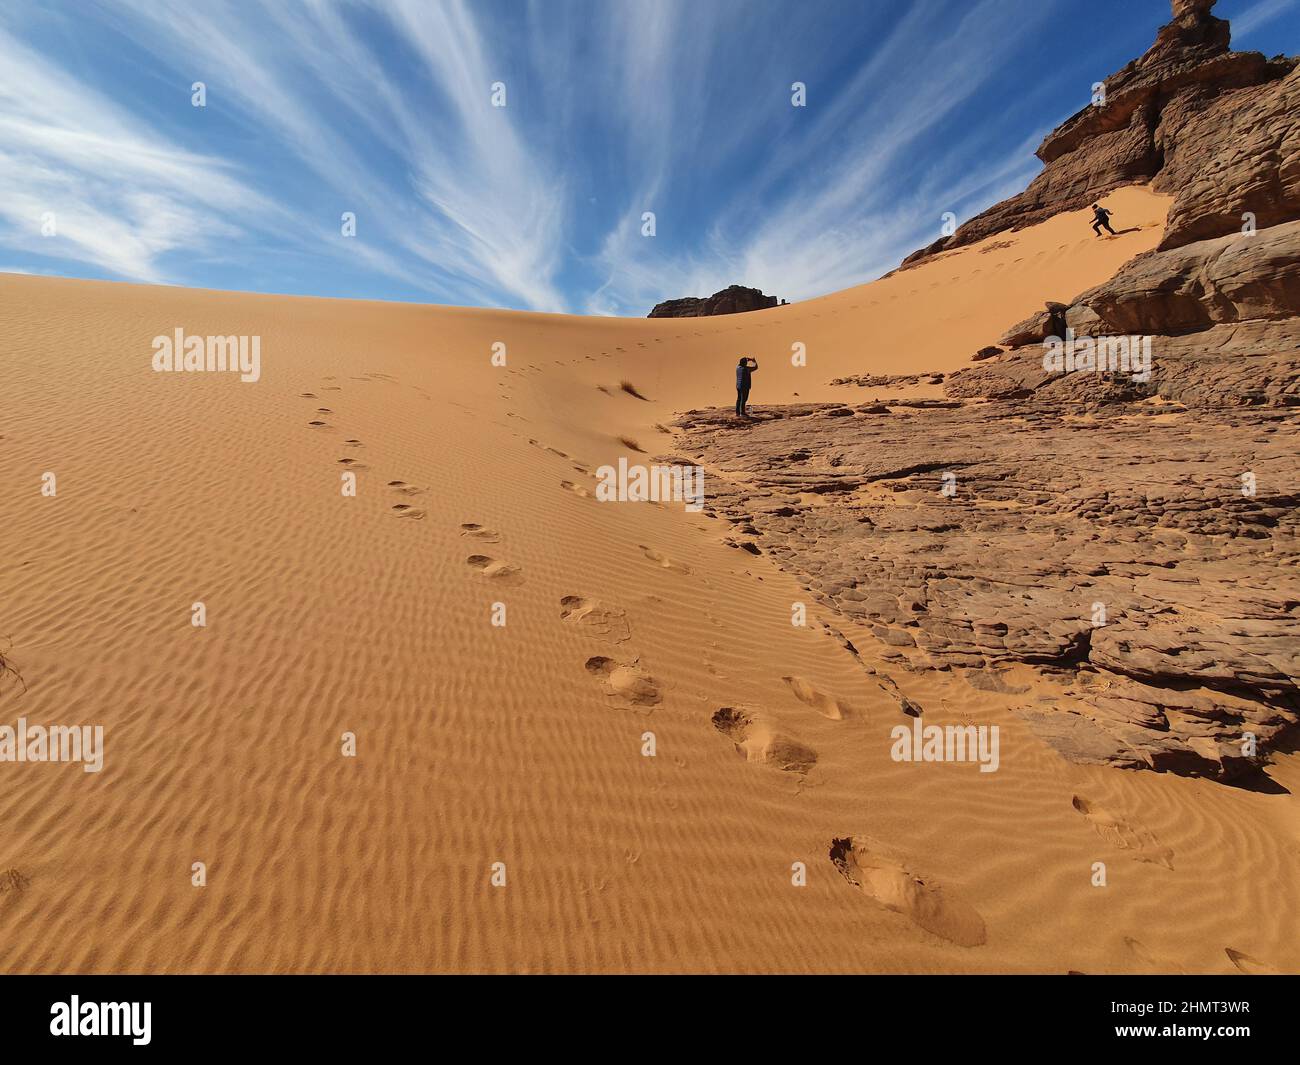 Vue à angle bas d'un homme qui filme un autre avec son téléphone, commencer à courir vers le bas d'une dune de sable rocheux, empreintes parallèles. Fond ciel bleu ciel nuageux. Banque D'Images